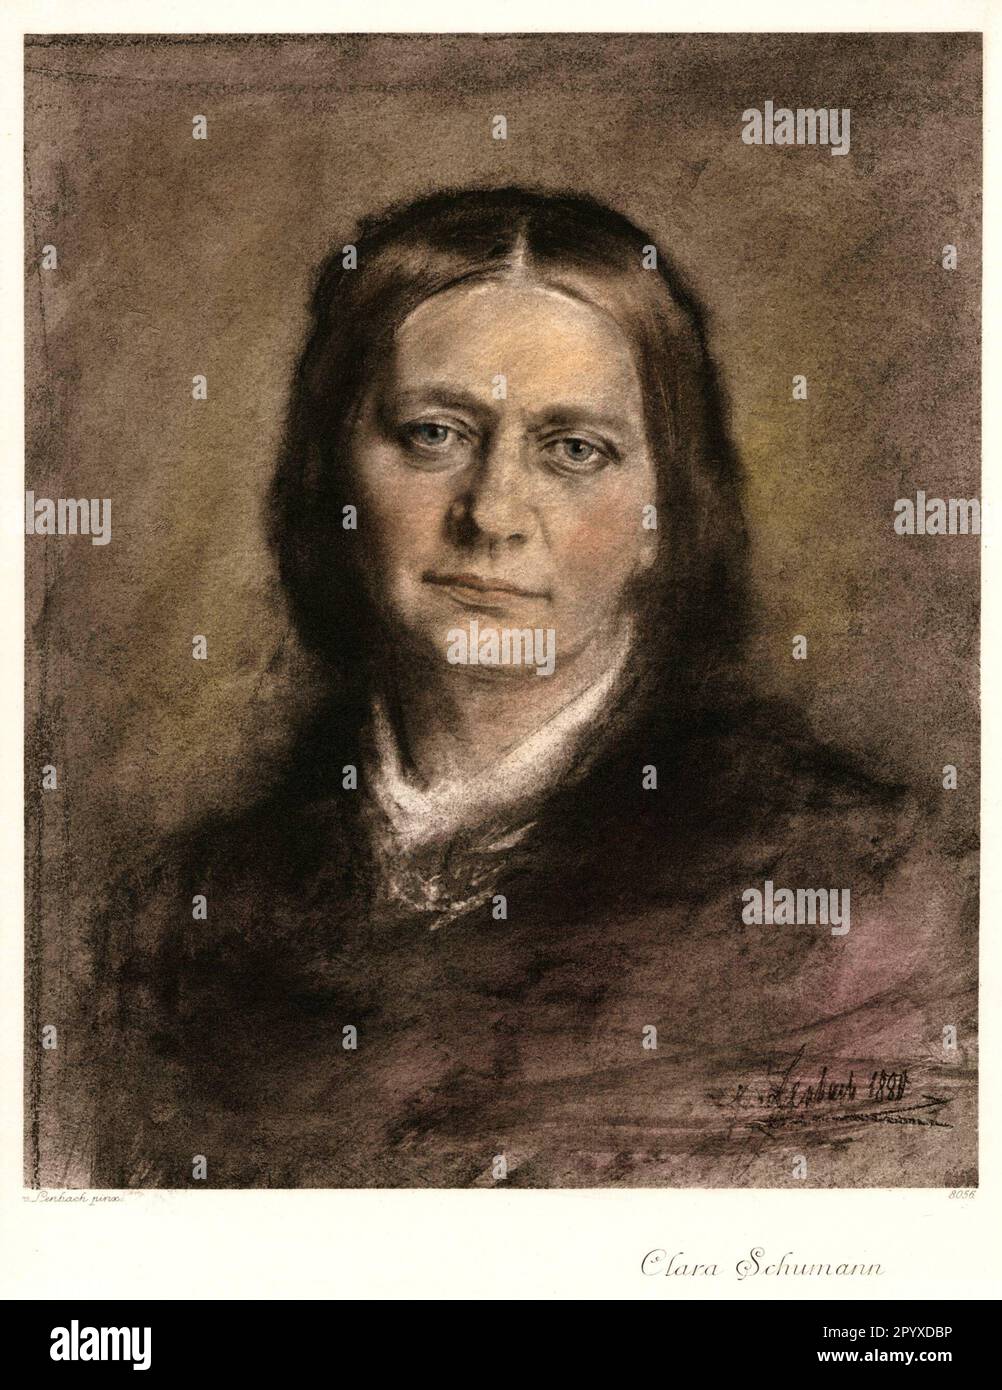 Clara Schumann (1819-1896), pianiste et compositeur allemand. Dessin pastel par Franz von Lenbach à partir de 1880. Photo: Heliogravure, Corpus Imaginum, Collection Hanfstaengl. [traduction automatique] Banque D'Images